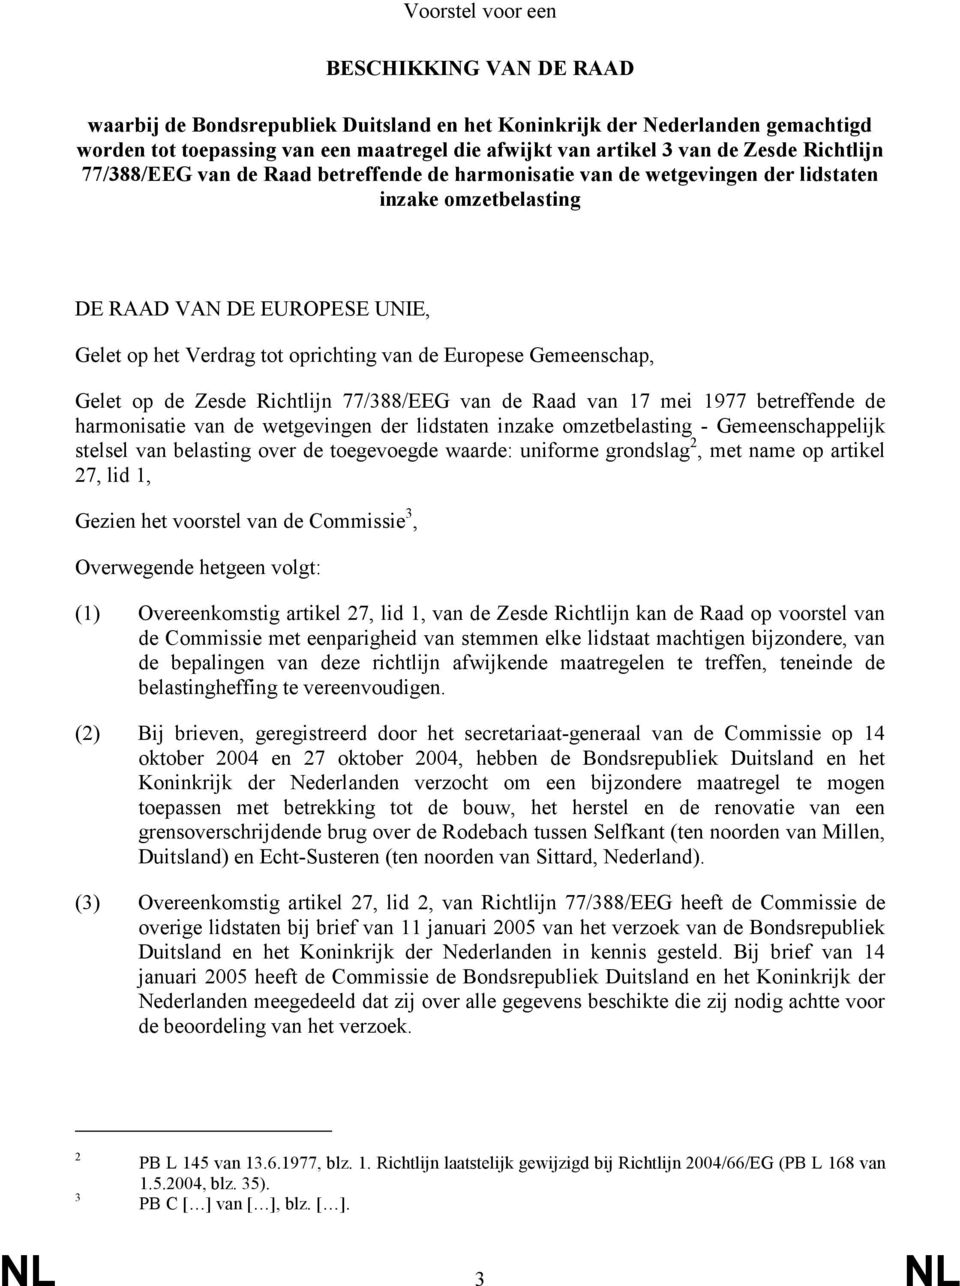 Europese Gemeenschap, Gelet op de Zesde Richtlijn 77/388/EEG van de Raad van 17 mei 1977 betreffende de harmonisatie van de wetgevingen der lidstaten inzake omzetbelasting - Gemeenschappelijk stelsel